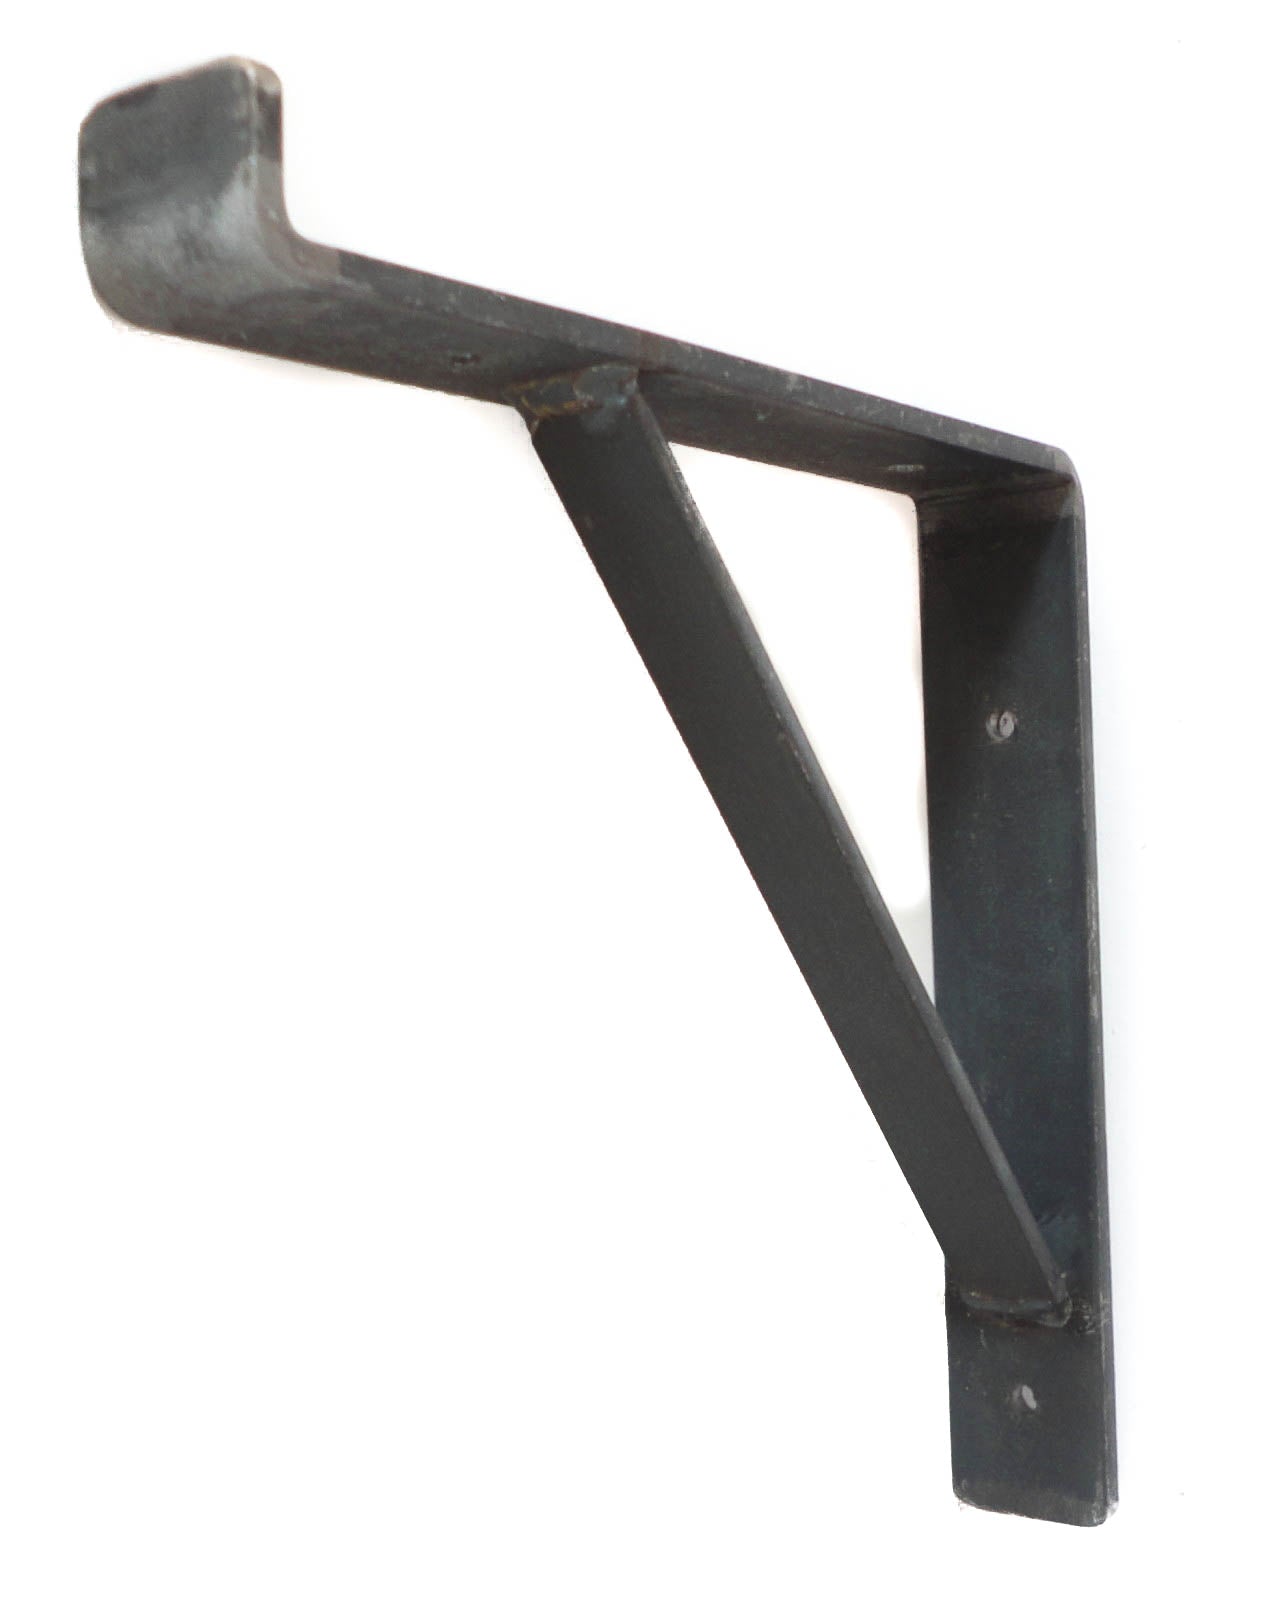 Rustic Scaffold Board Shelf Brackets Heavy Duty Handmade Industrial Steel Metal